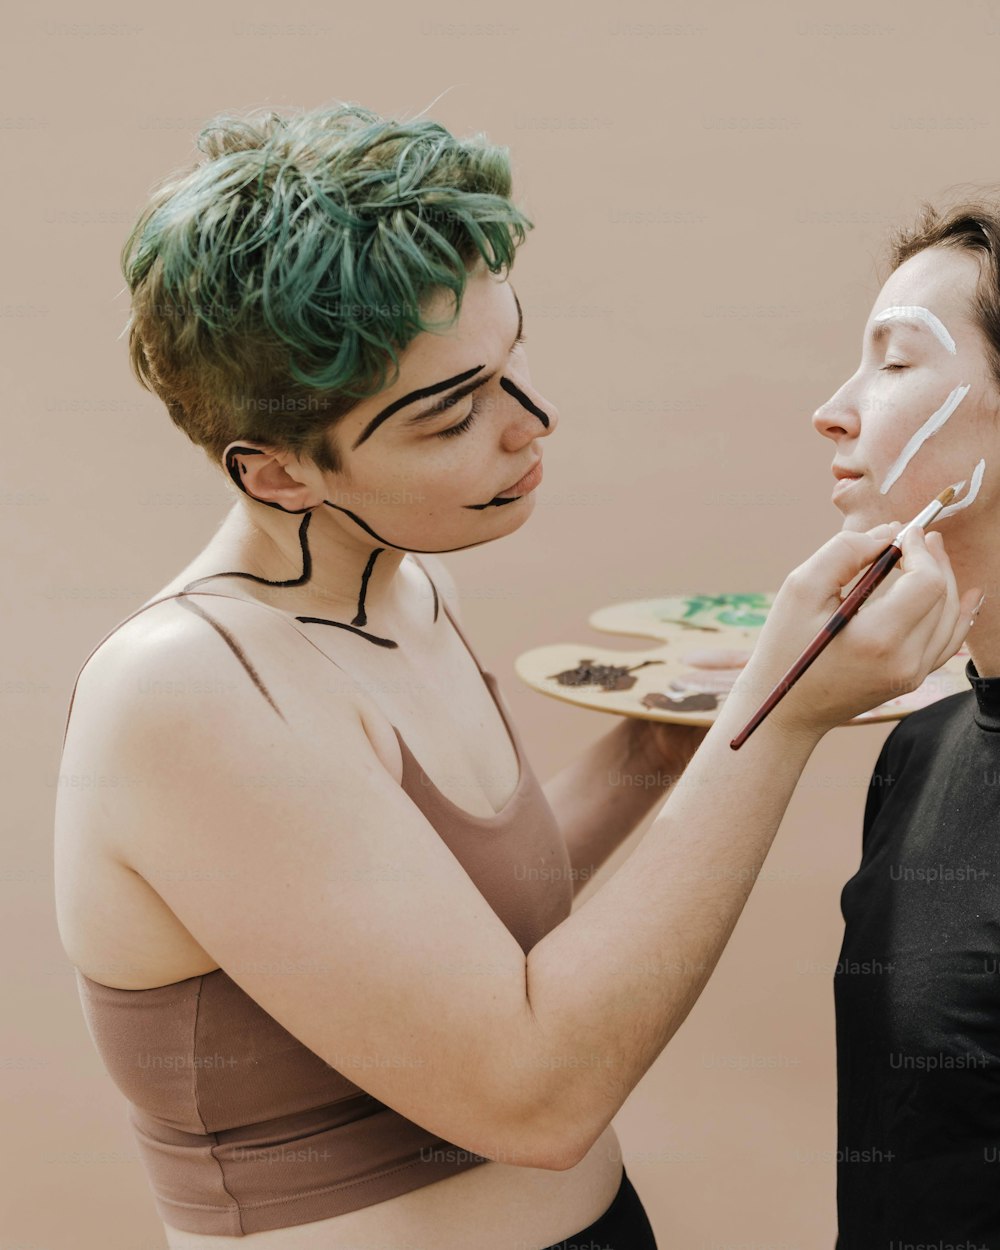 Eine Frau mit grünen Haaren malt das Gesicht einer anderen Frau